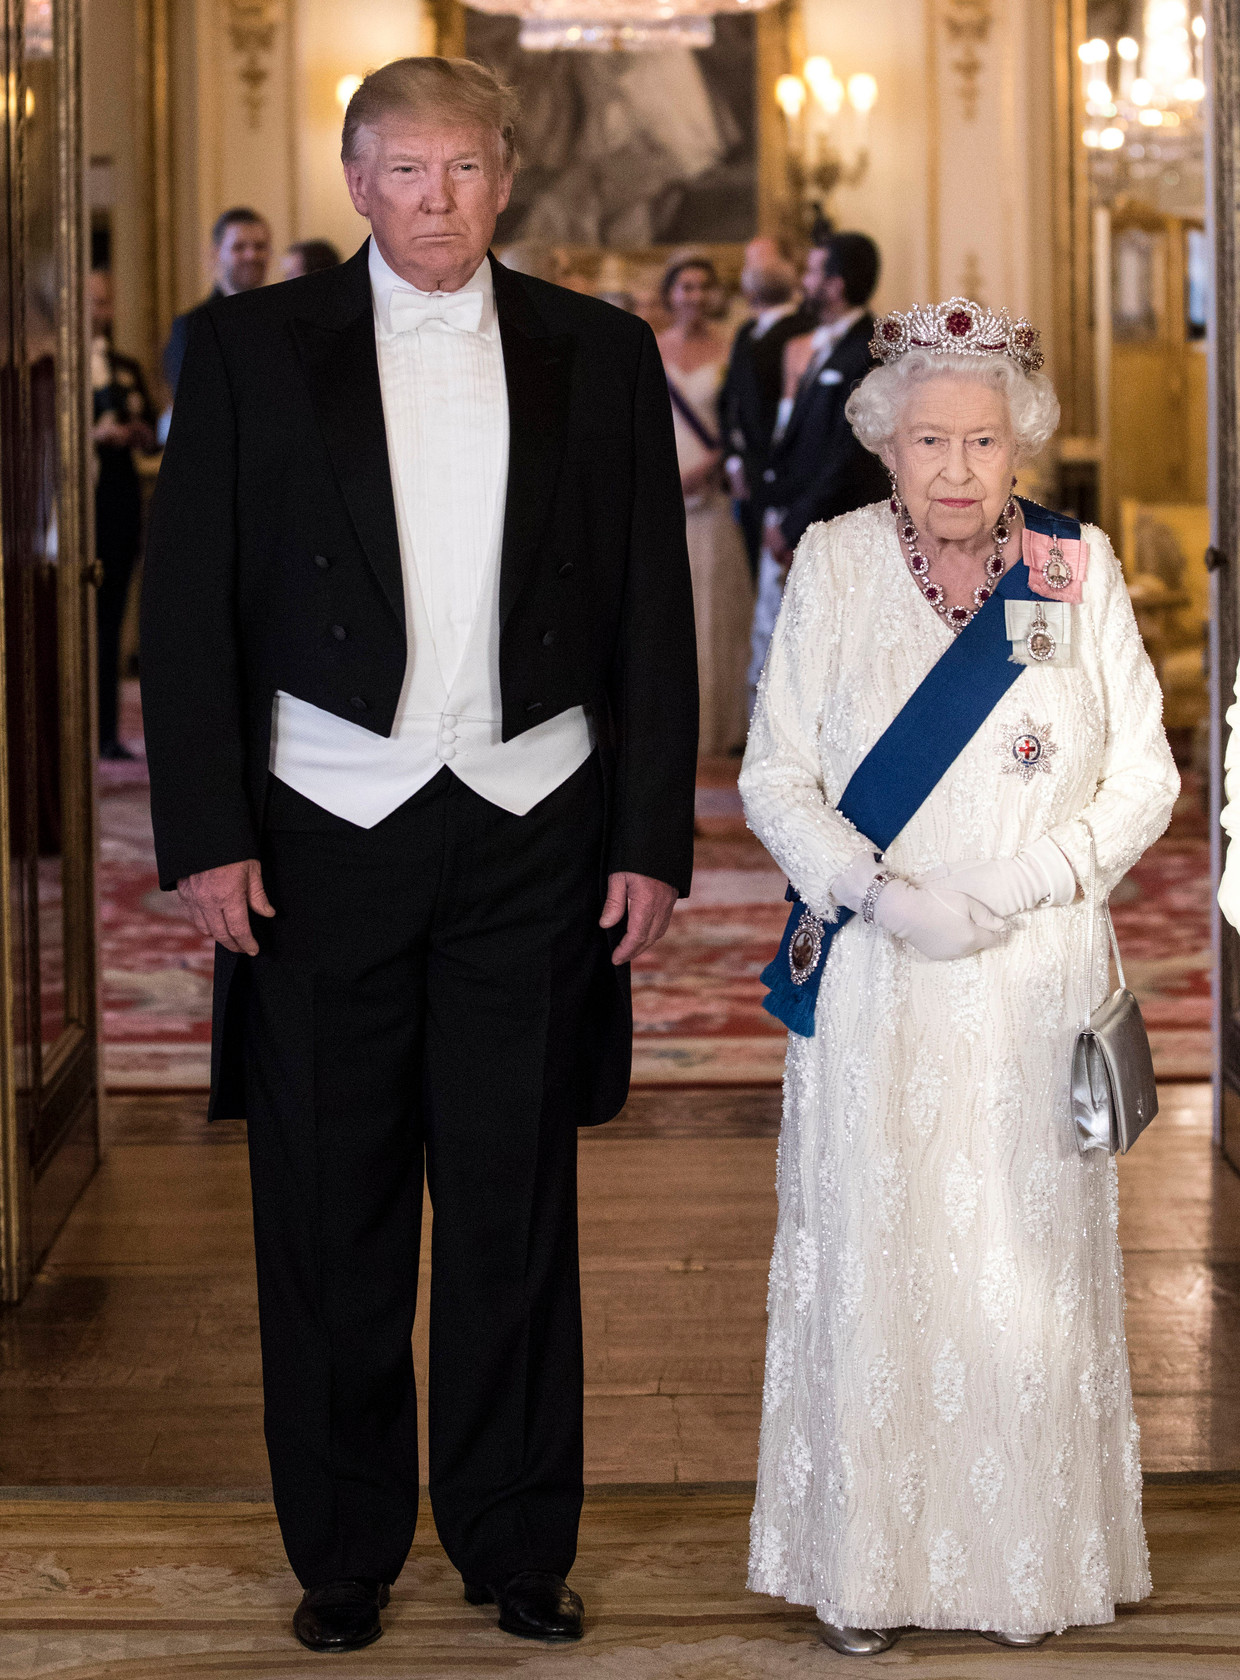 De Stijlpastoor untuk sementara teralihkan dari gaya rambut presiden karena gagasan dasi putih Donald J. Trump